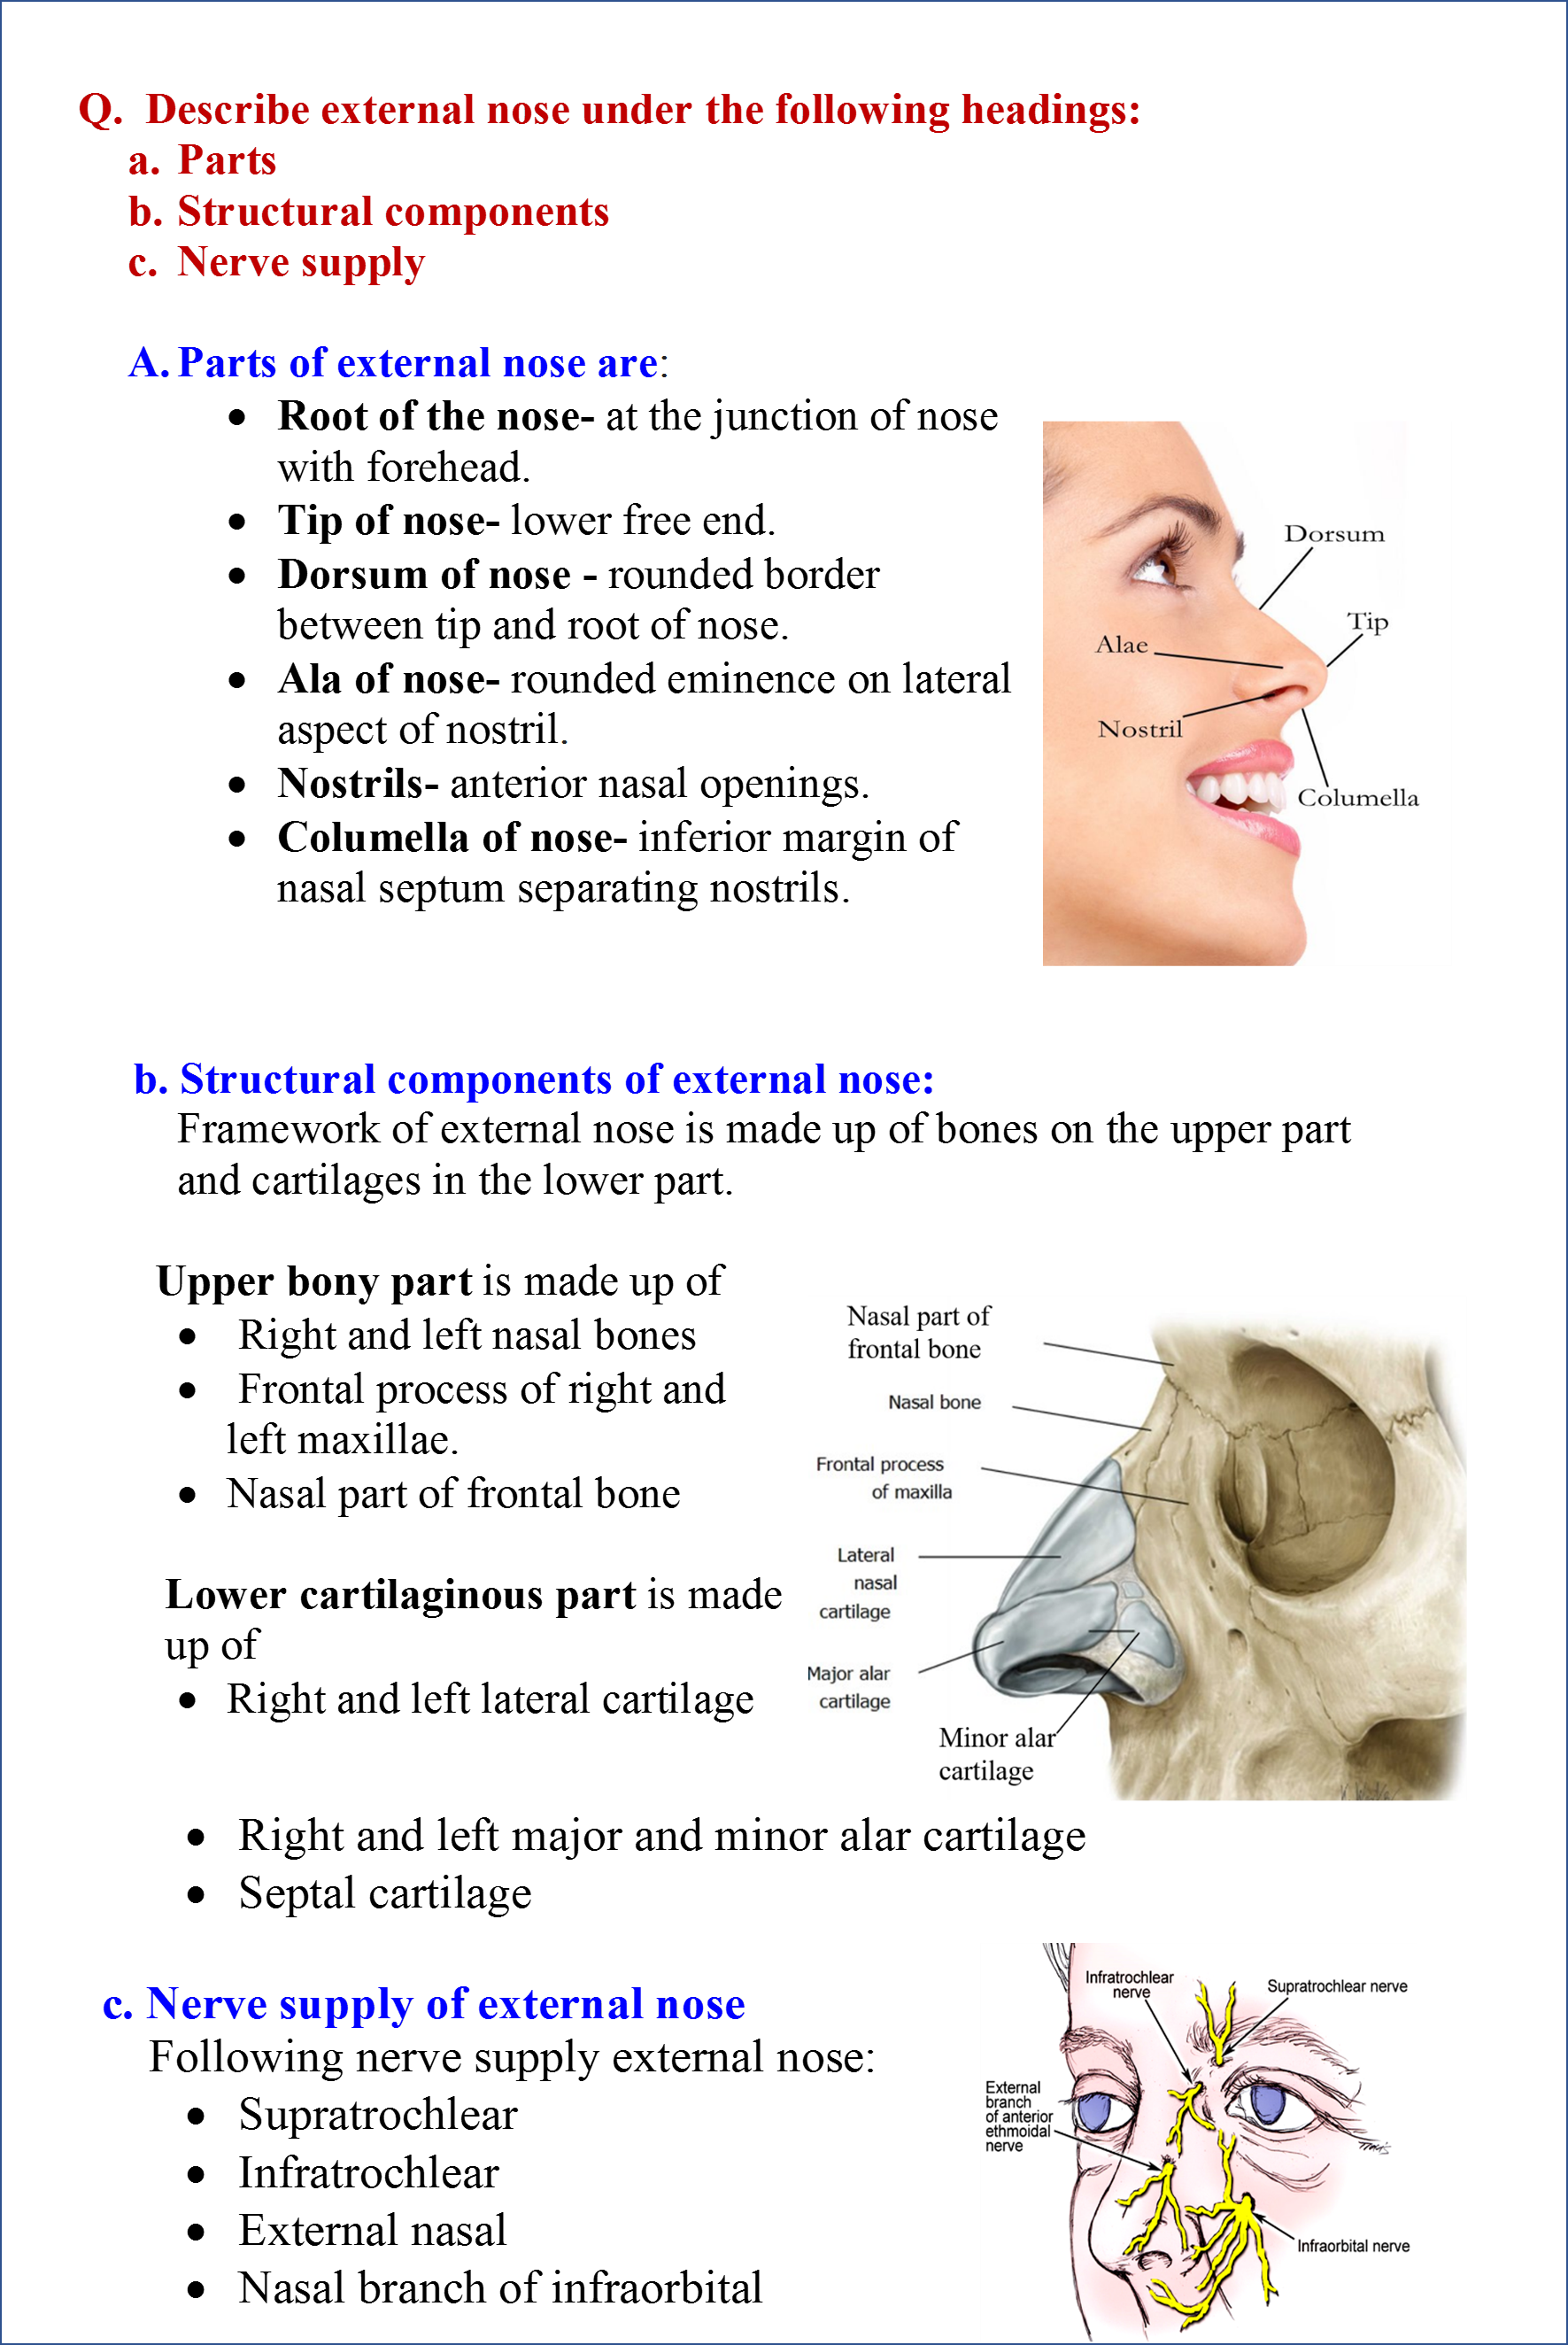 [DIAGRAM] Diagram Of Nasal Cavity - MYDIAGRAM.ONLINE